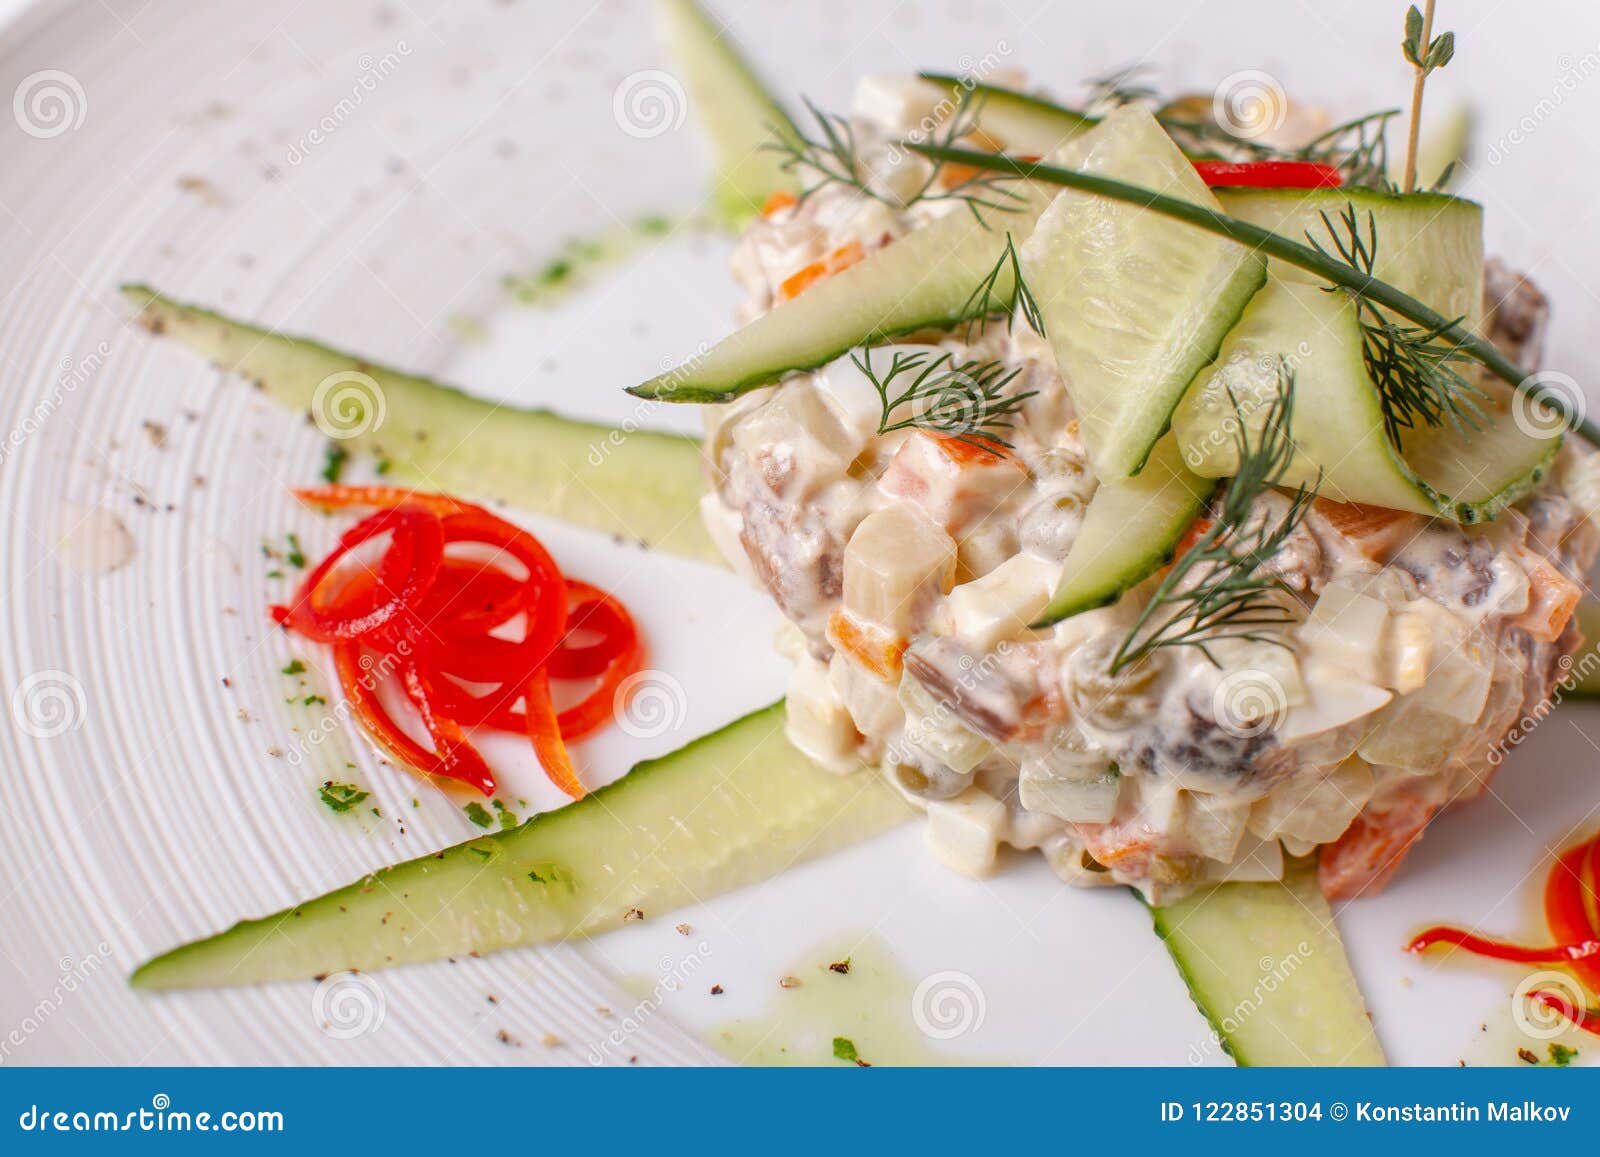 与菜和肉的俄国传统沙拉奥利维尔 在一个白色盘的沙拉在桌上 婚姻正餐肉卷熏制的蕃茄